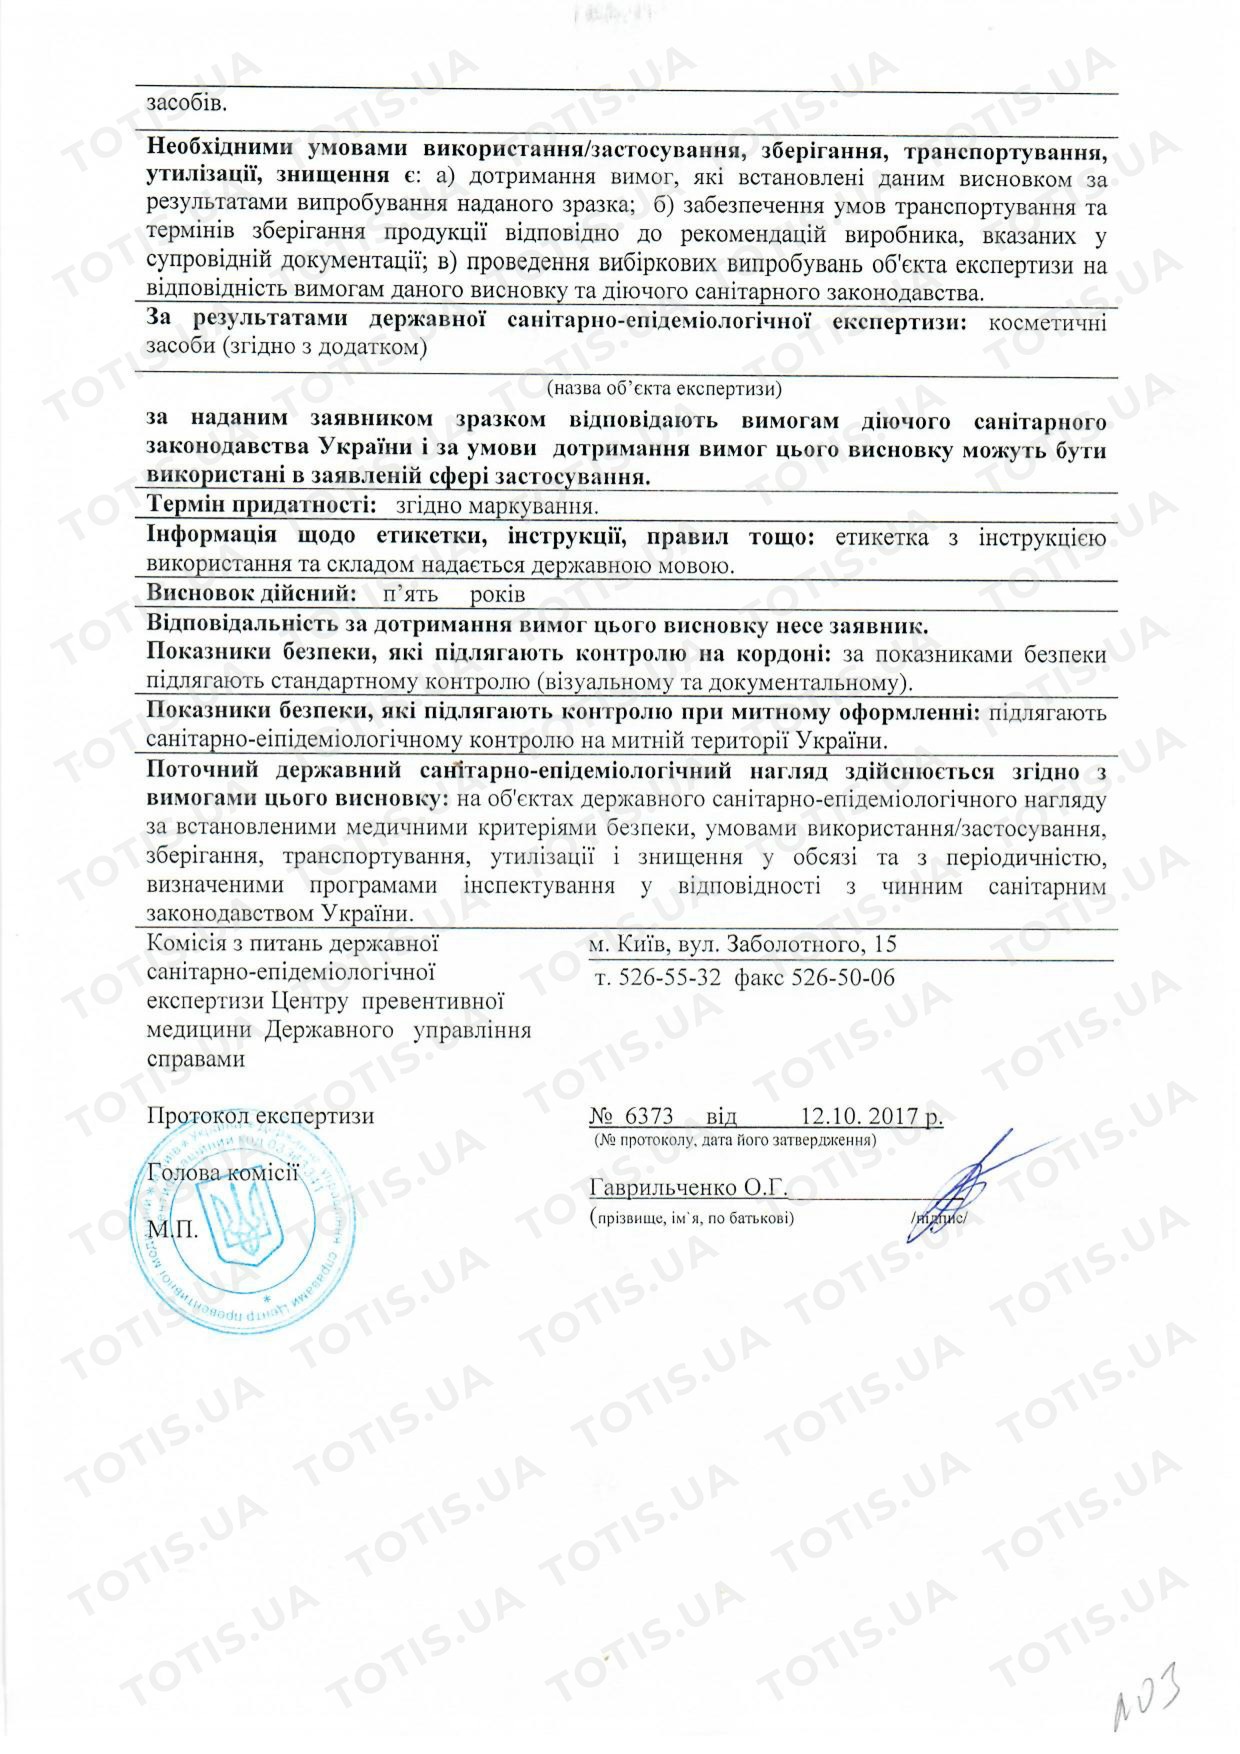 Mastelli препараты в Украине - изображение сертификата 2